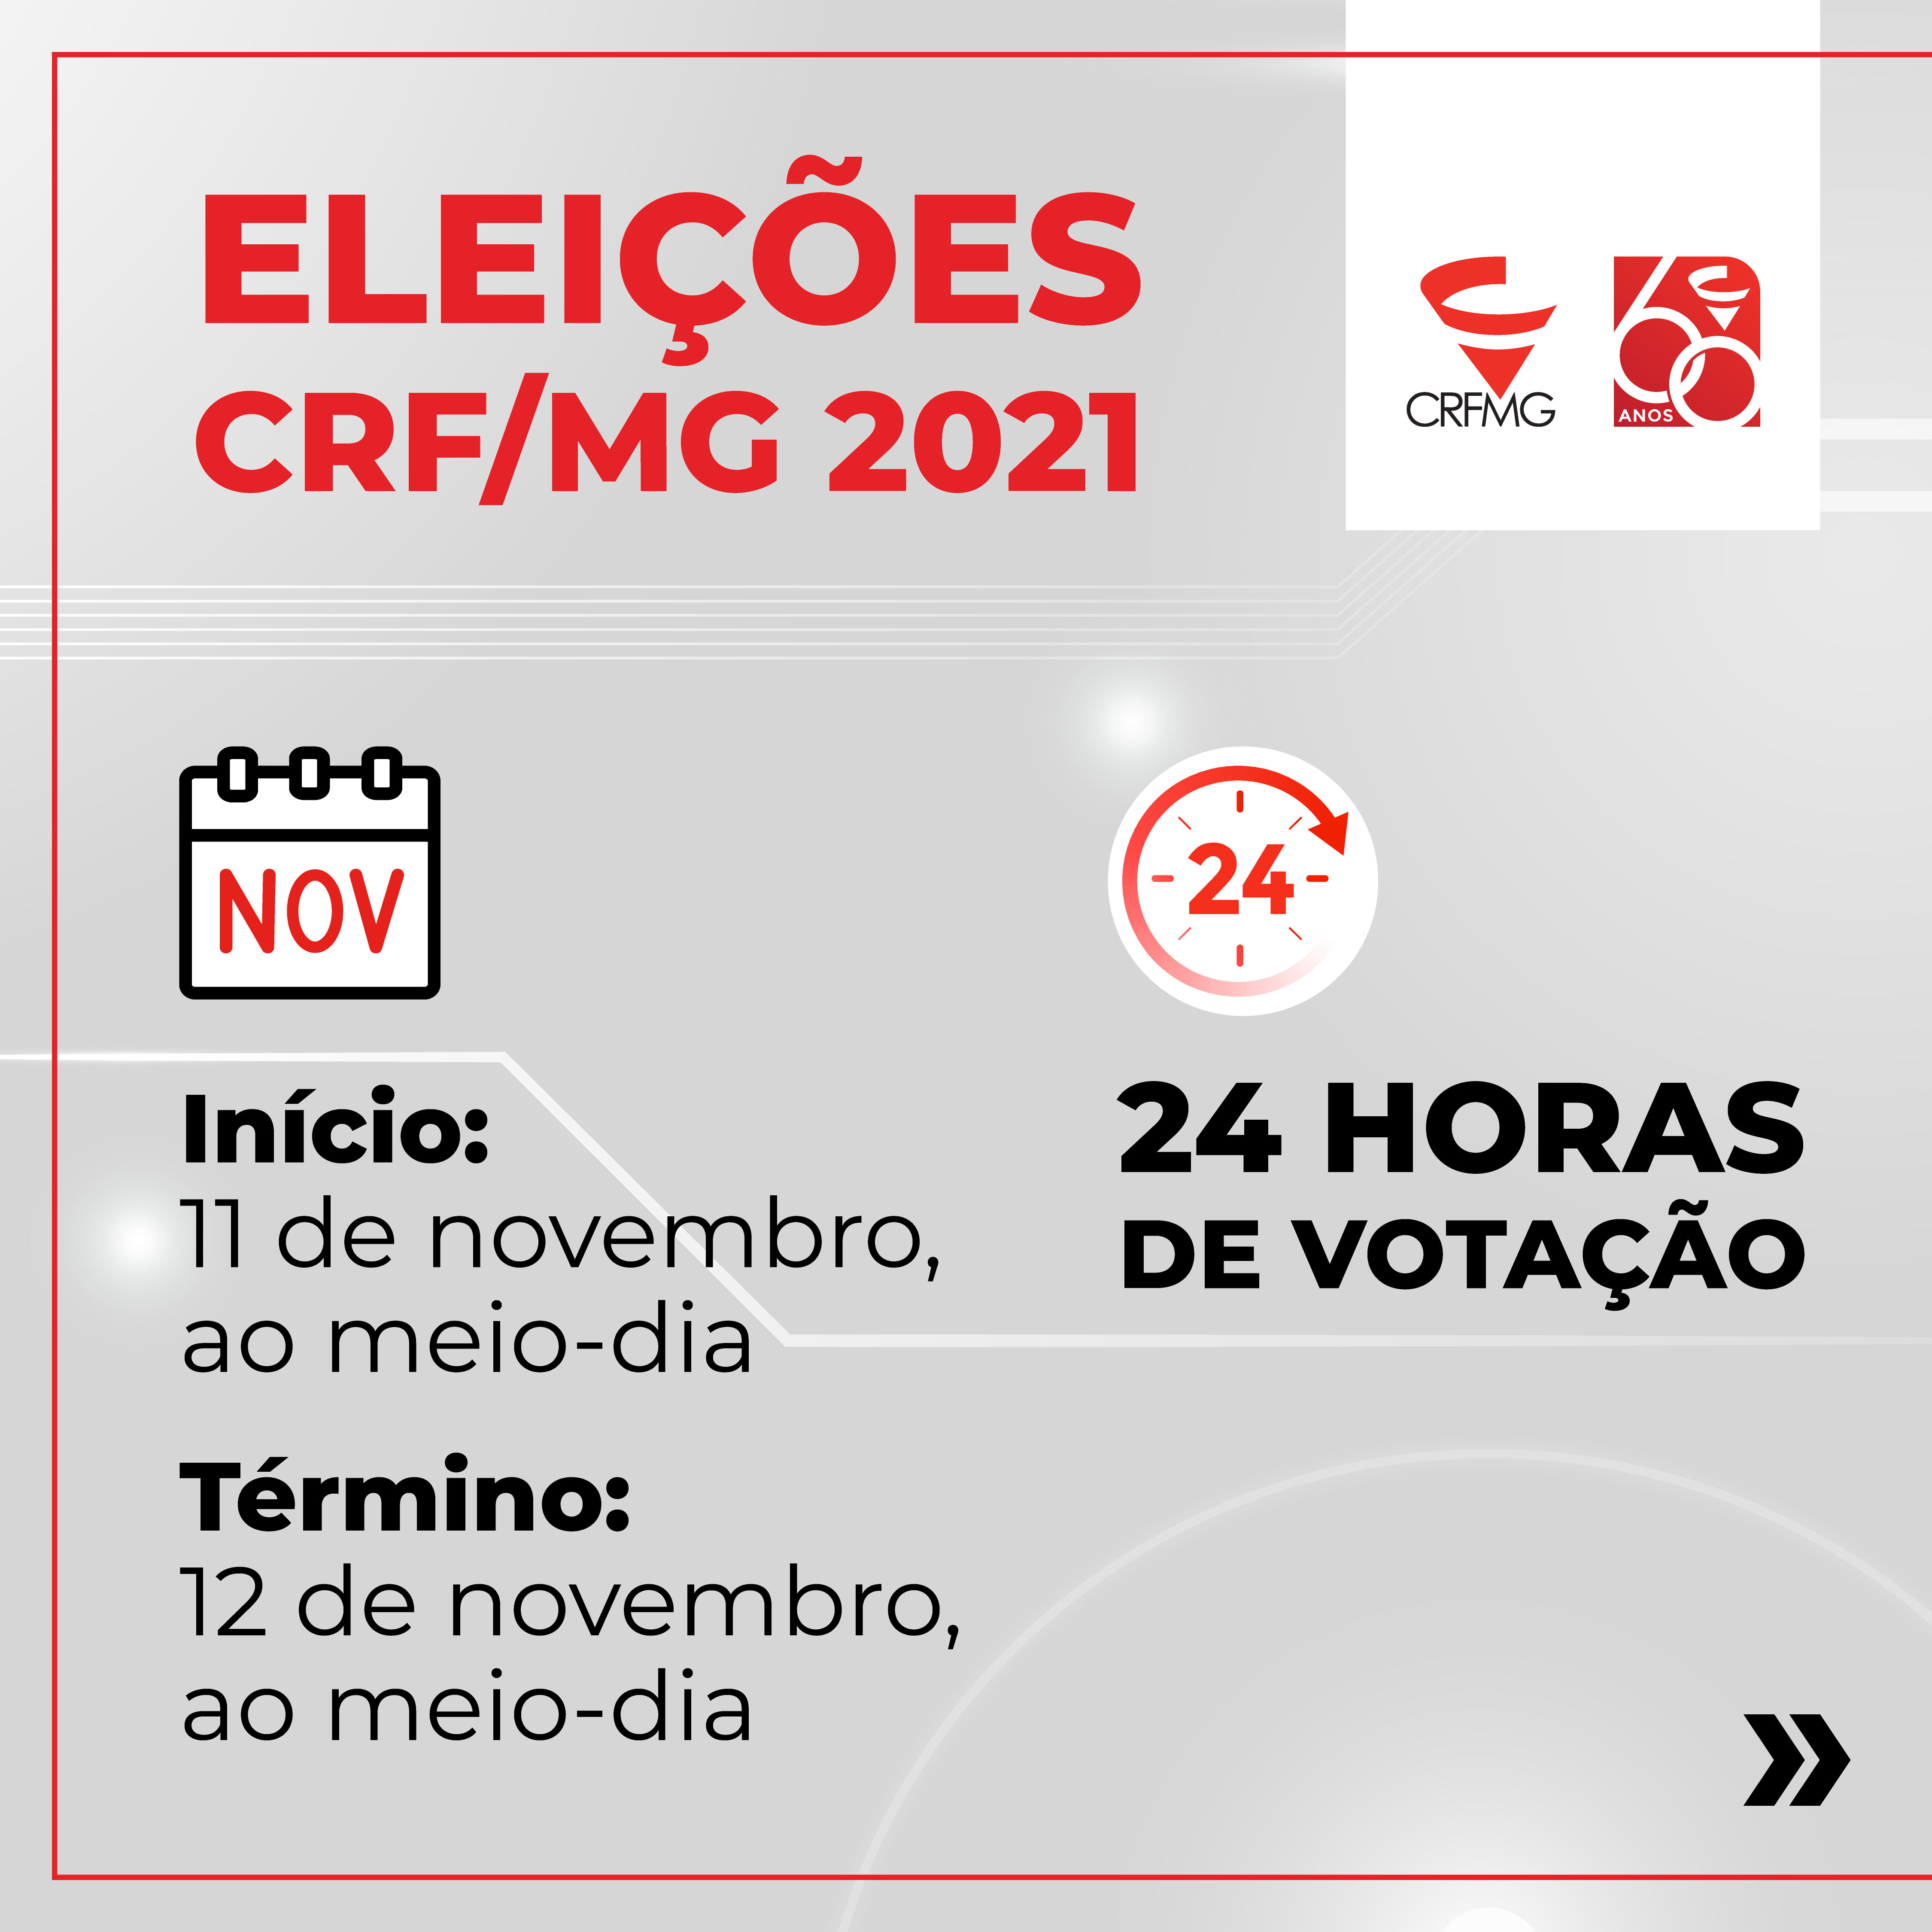 Eleições CRF/MG 2021